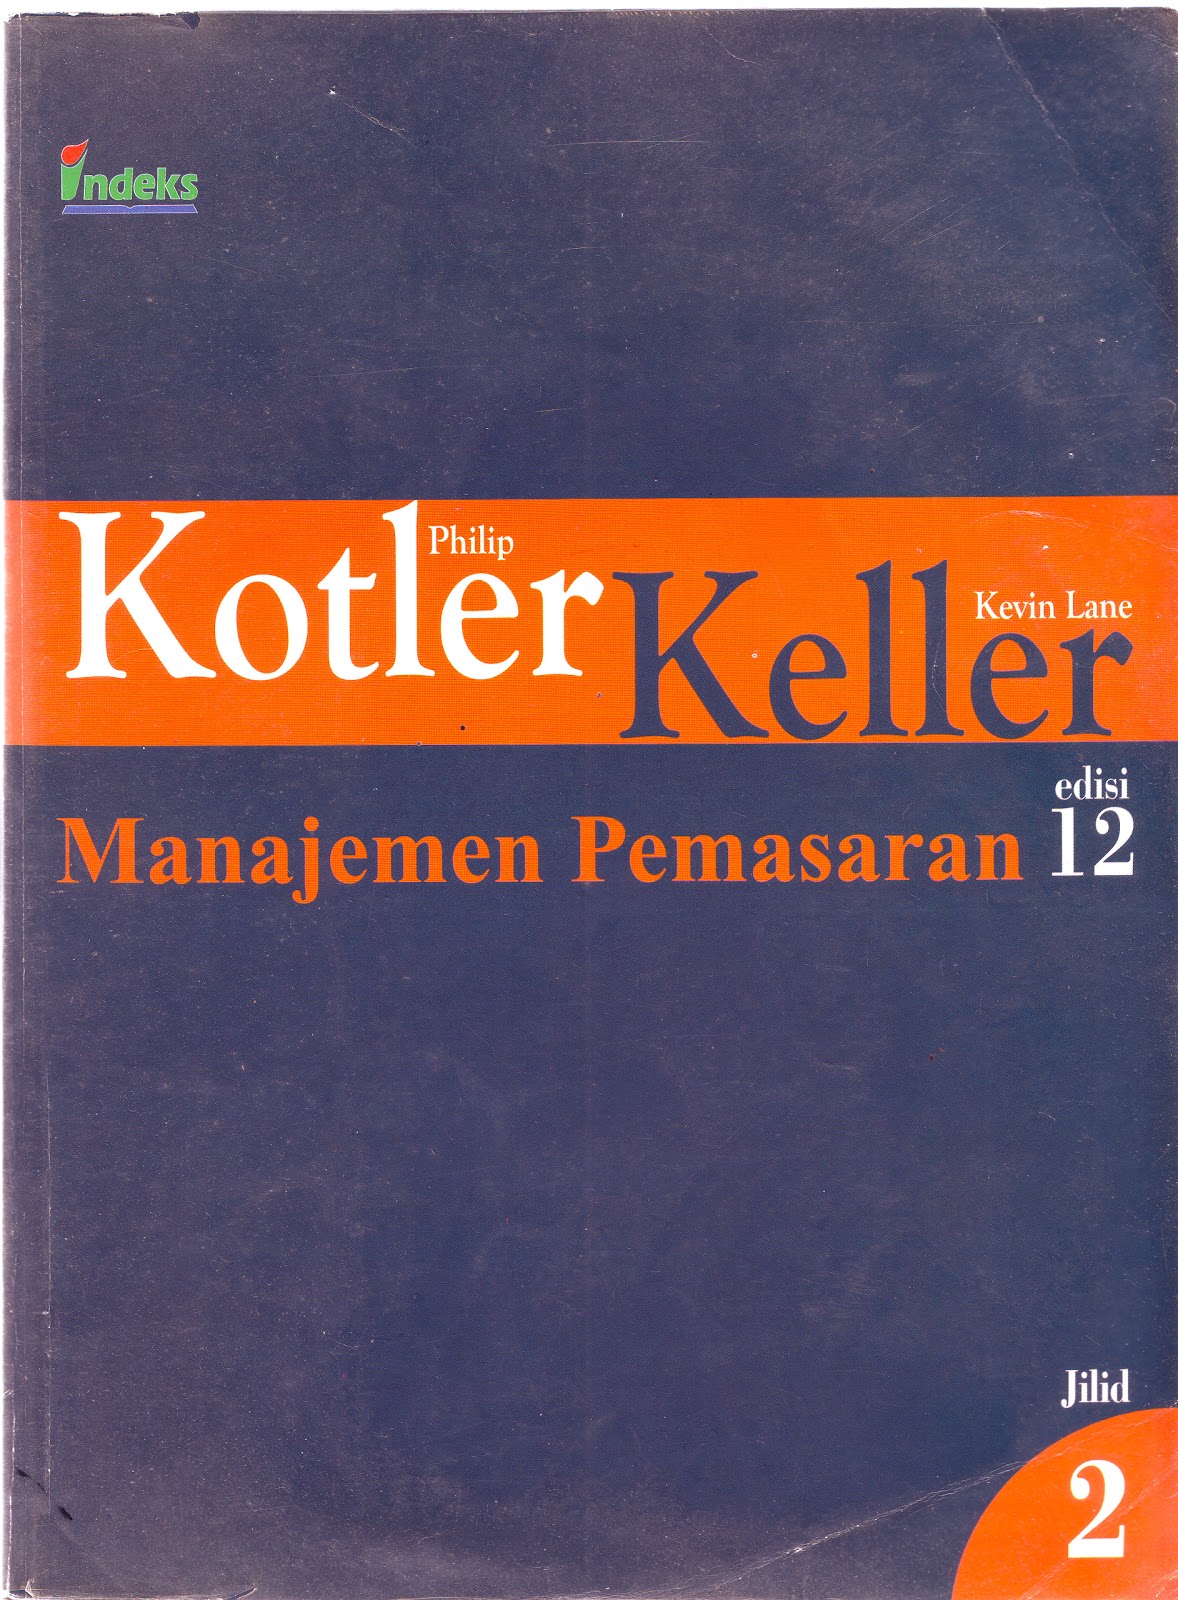 Buku Manajemen Pemasaran Philip Kotler Download